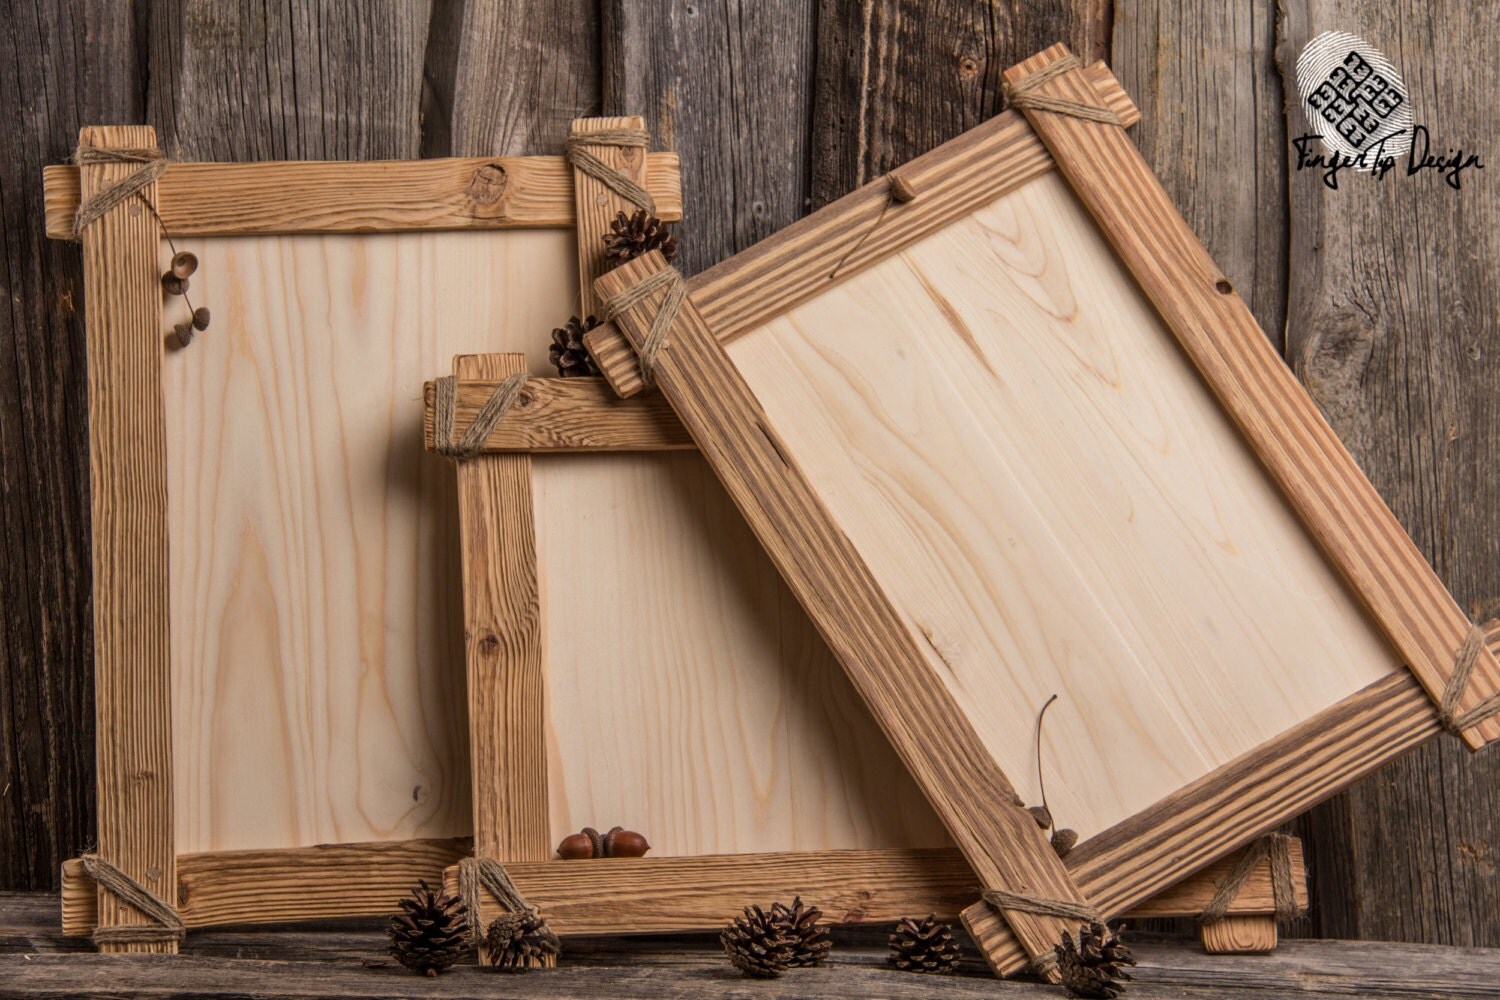 Оригинальные рамки из дерева. Деревянная рамка. Деревянные рамки для фотографий. Дизайнерские фоторамки из дерева. Изготовление деревянных рамок